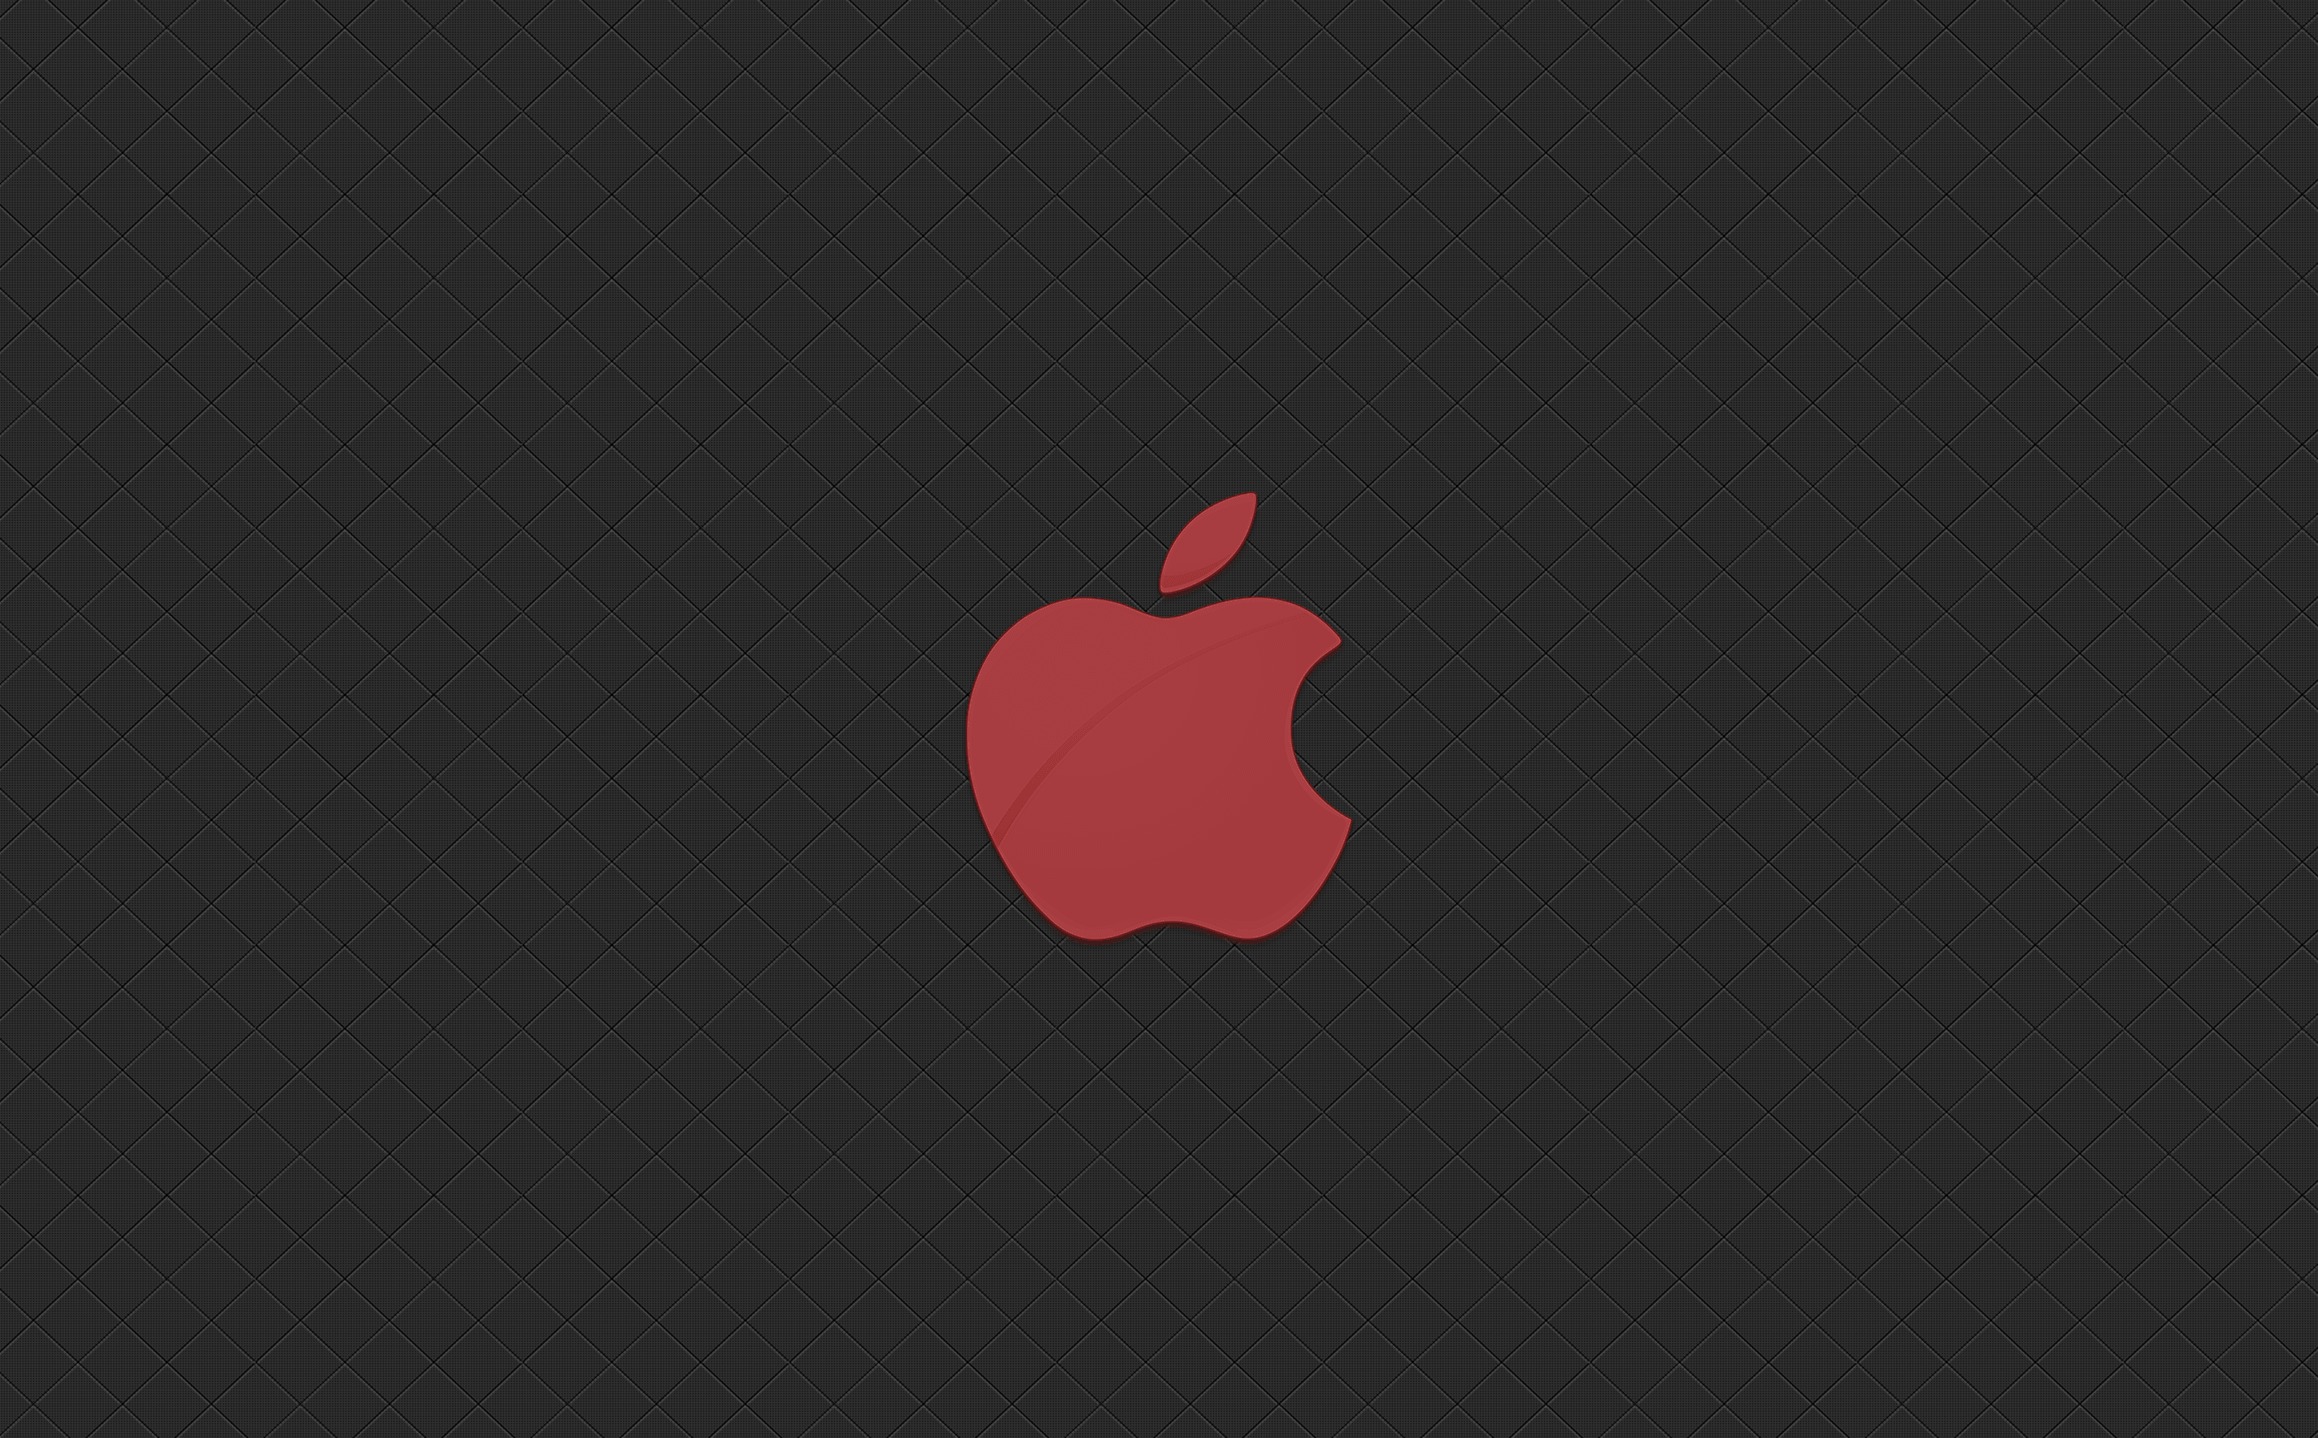 Обои 13 мини. Логотип Apple. Эпл на черном фоне. Обои Apple. Обои с яблоком Apple на черном фоне.